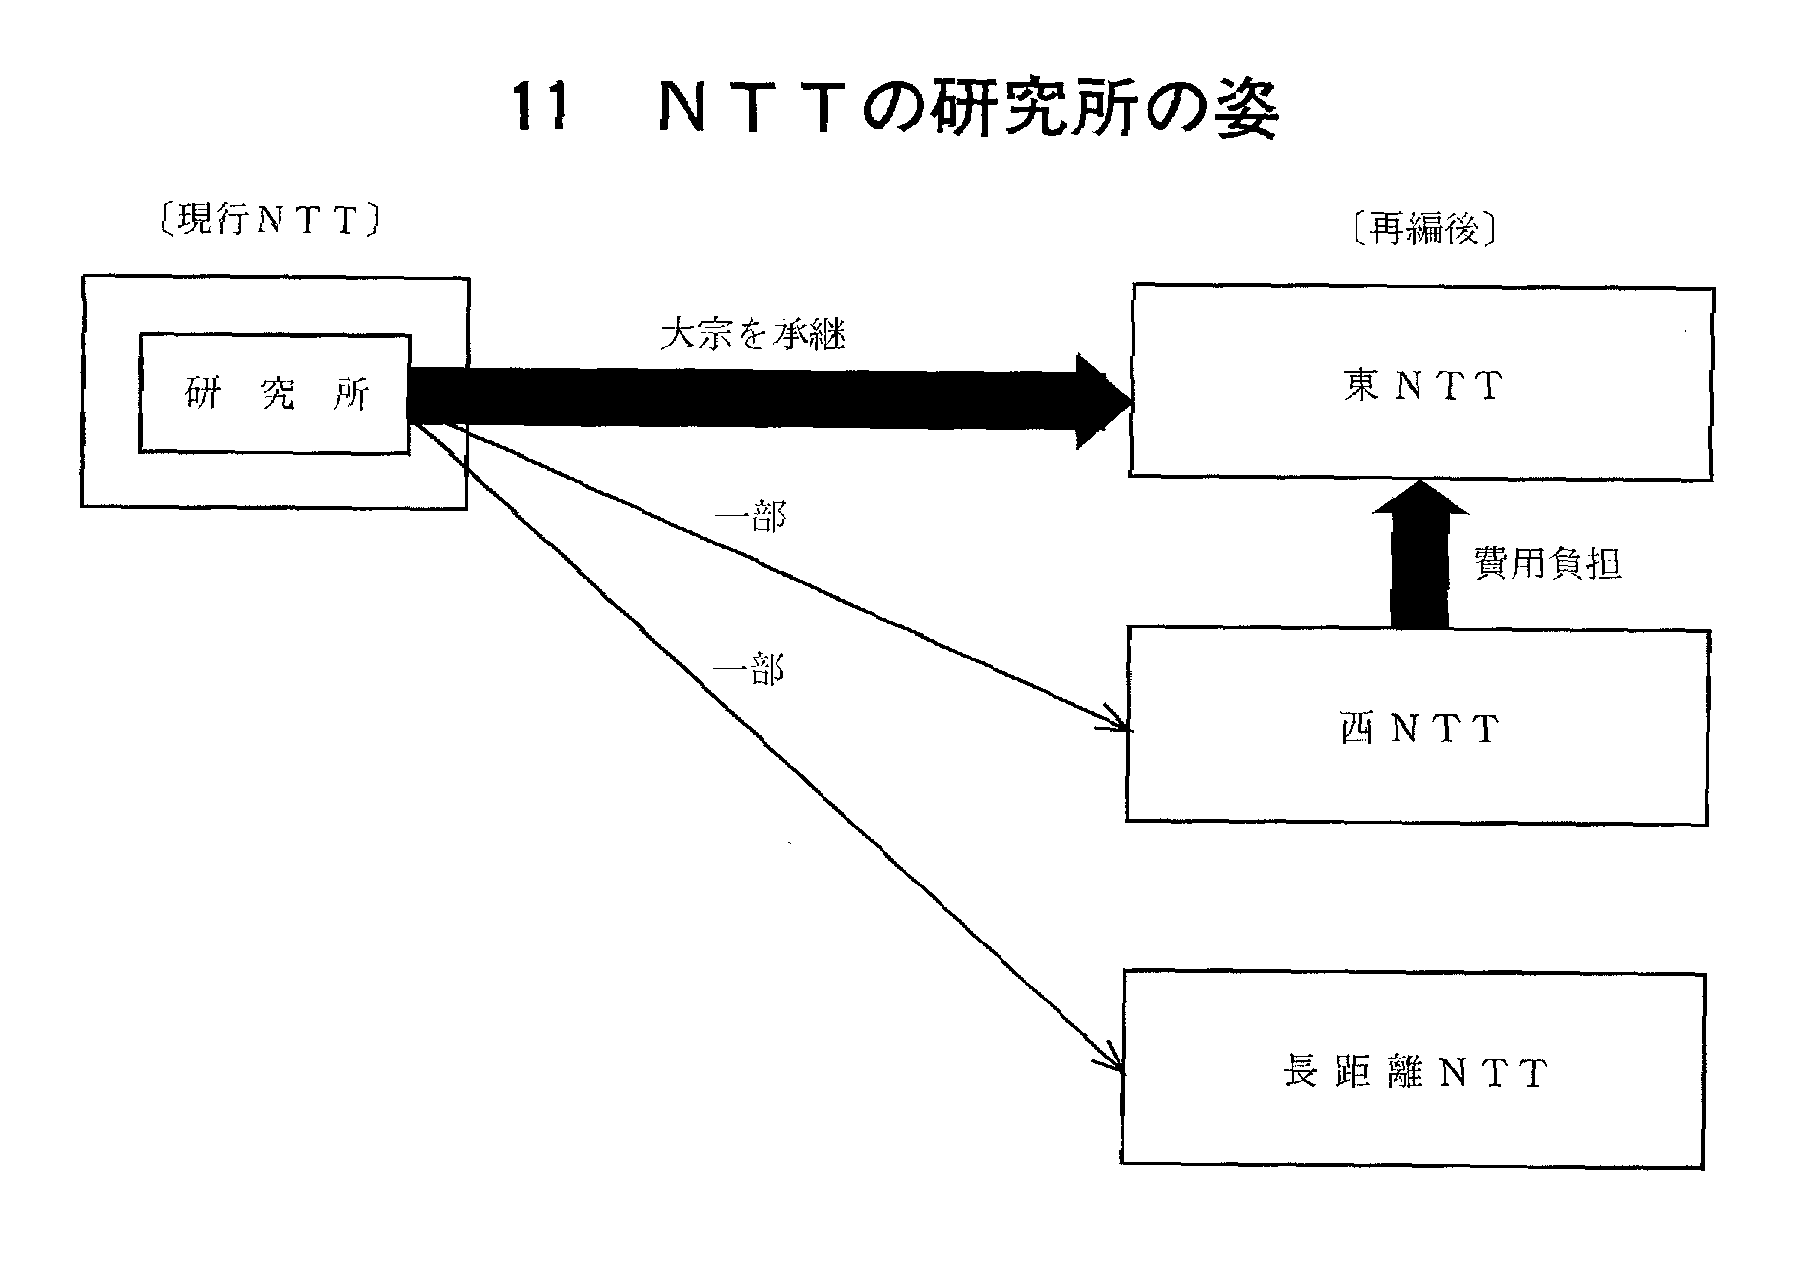 11 NTTの研究所の姿